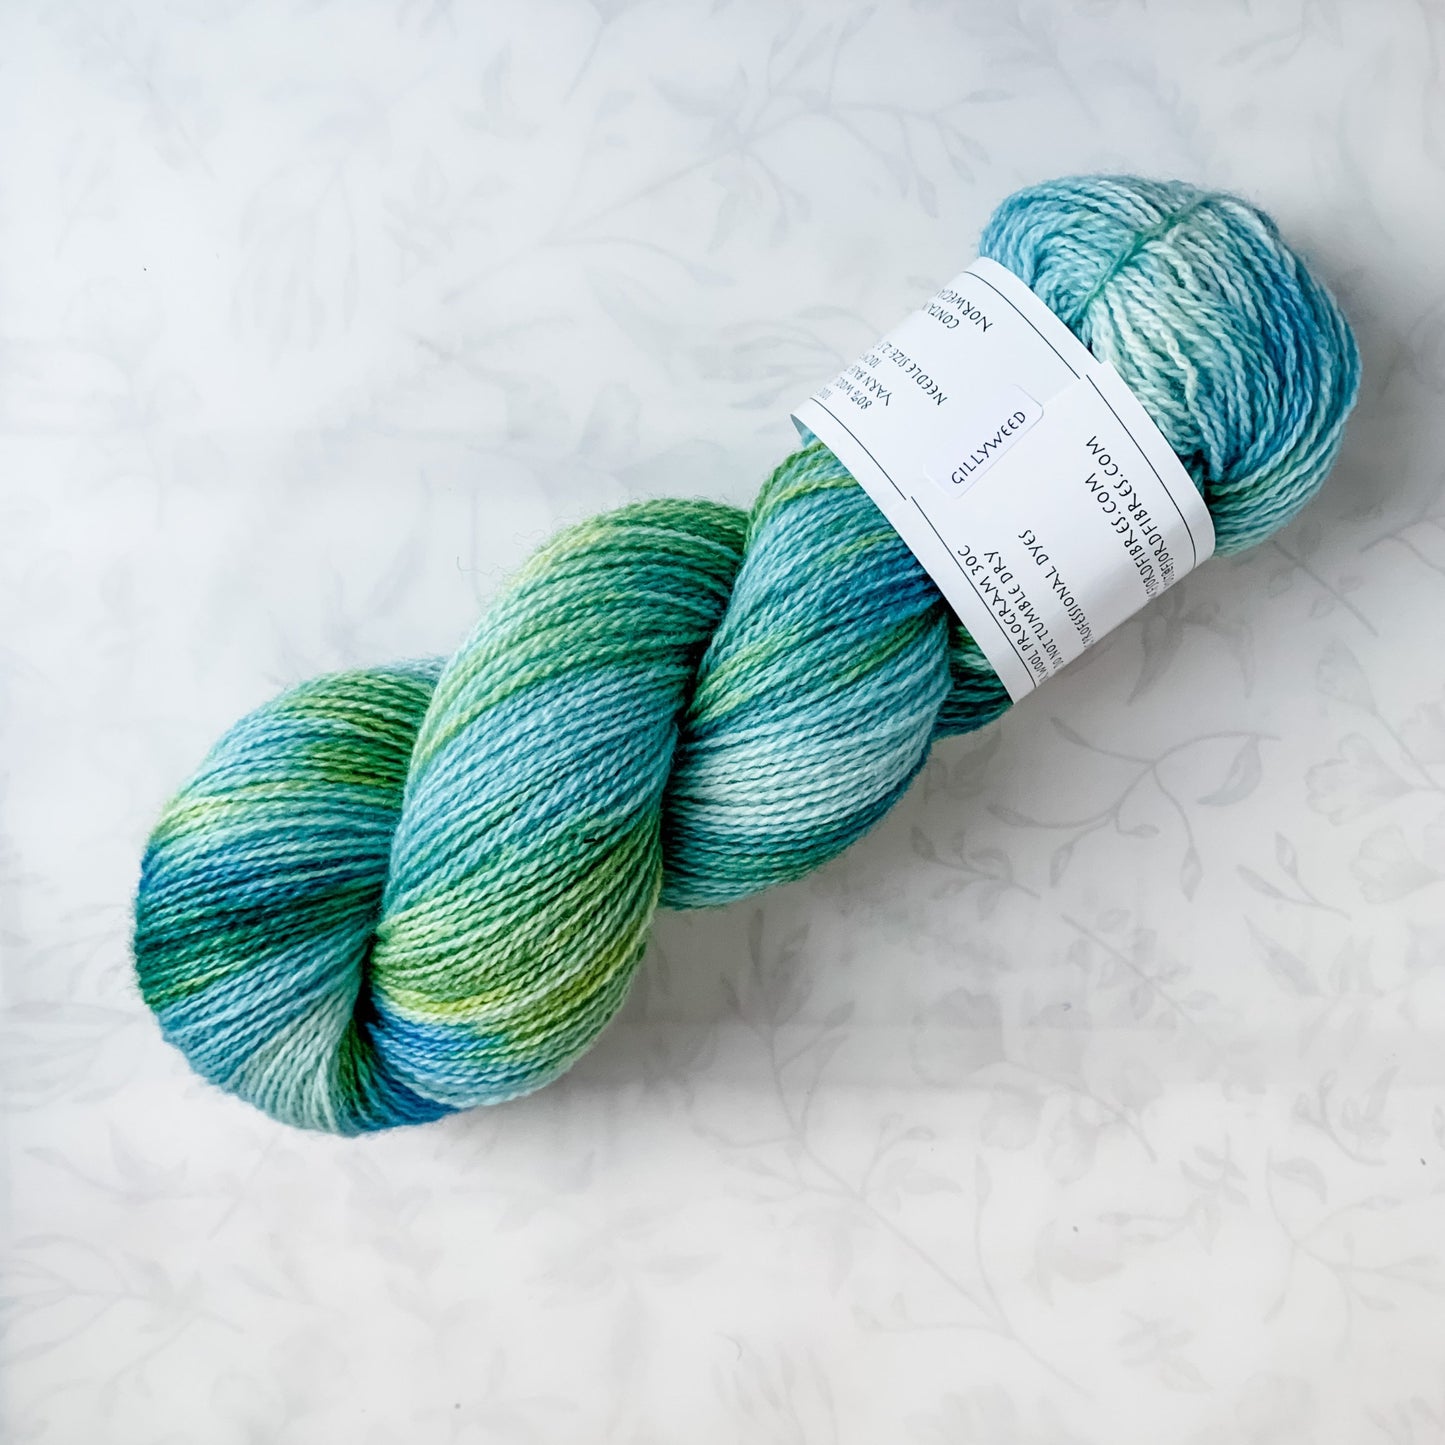 Gillyweed - Trollfjord sock - Hand Dyed Yarn - Variegated Yarn